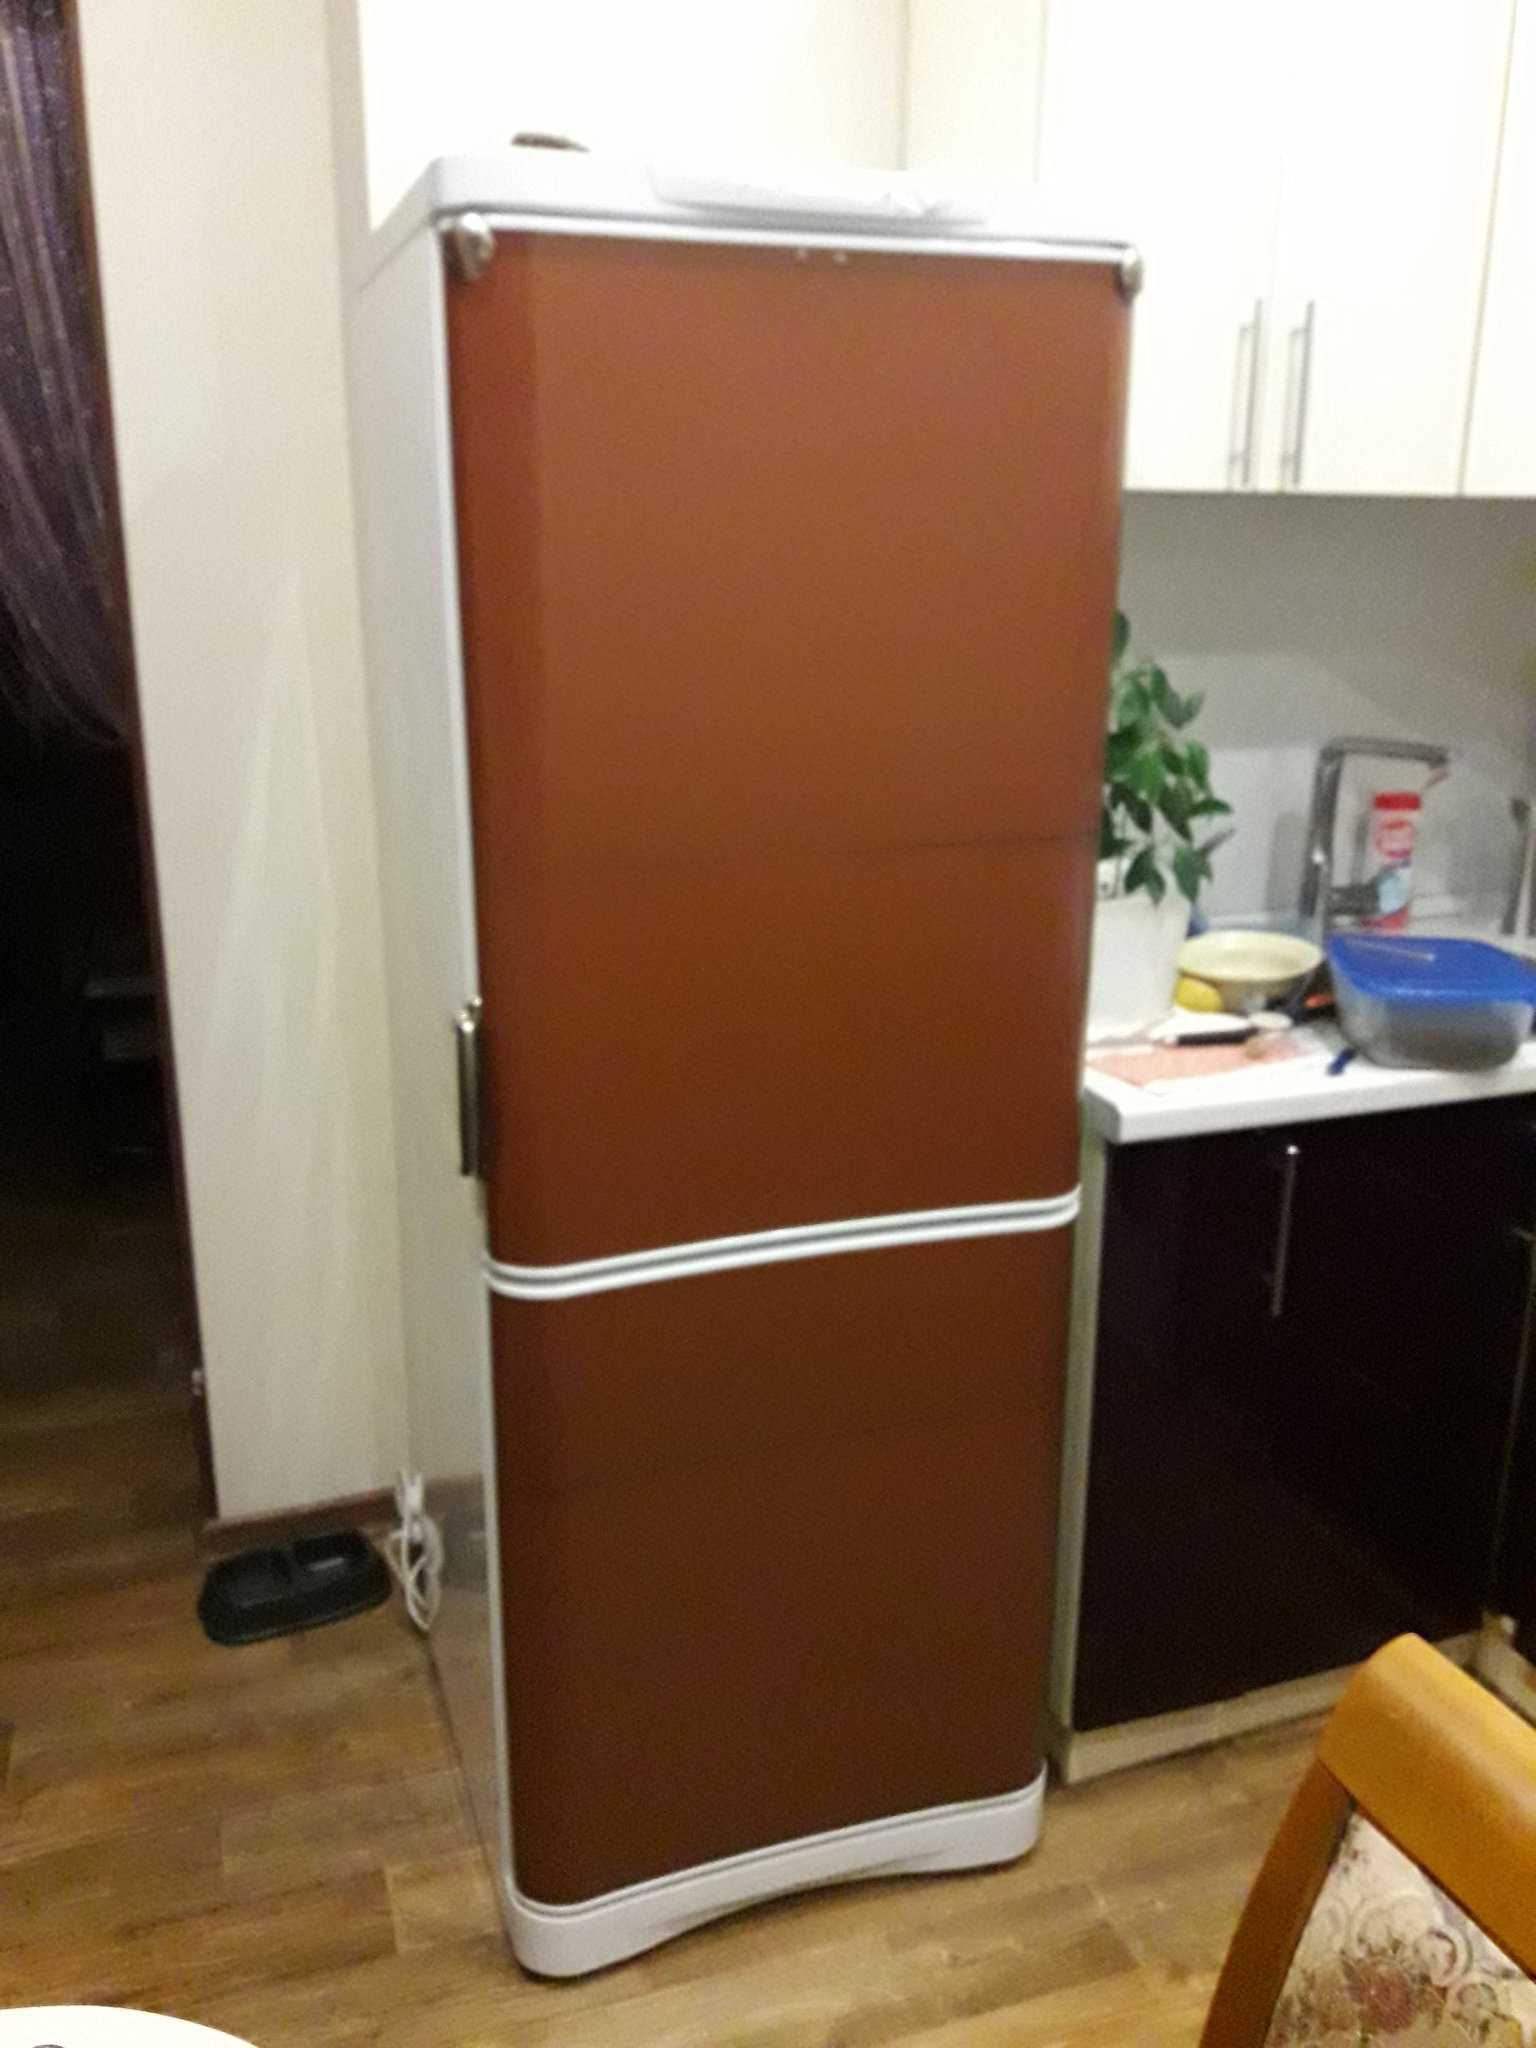 l'idea di un design luminoso del frigorifero